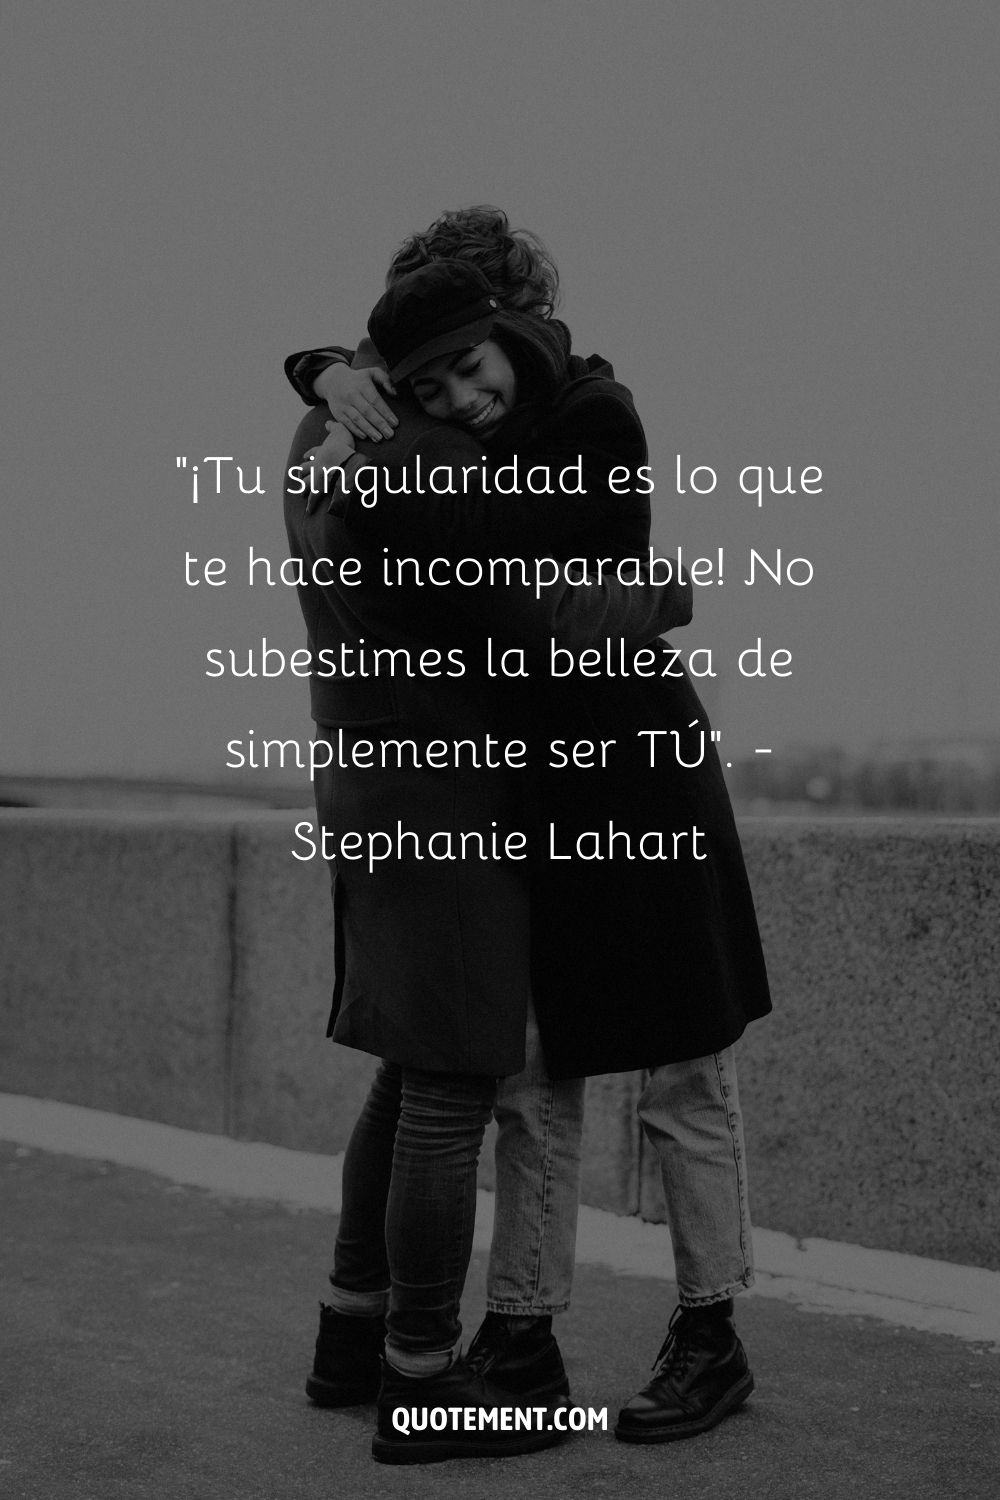 "¡Tu singularidad es lo que te hace incomparable! No subestimes la belleza de ser TÚ". - Stephanie Lahart